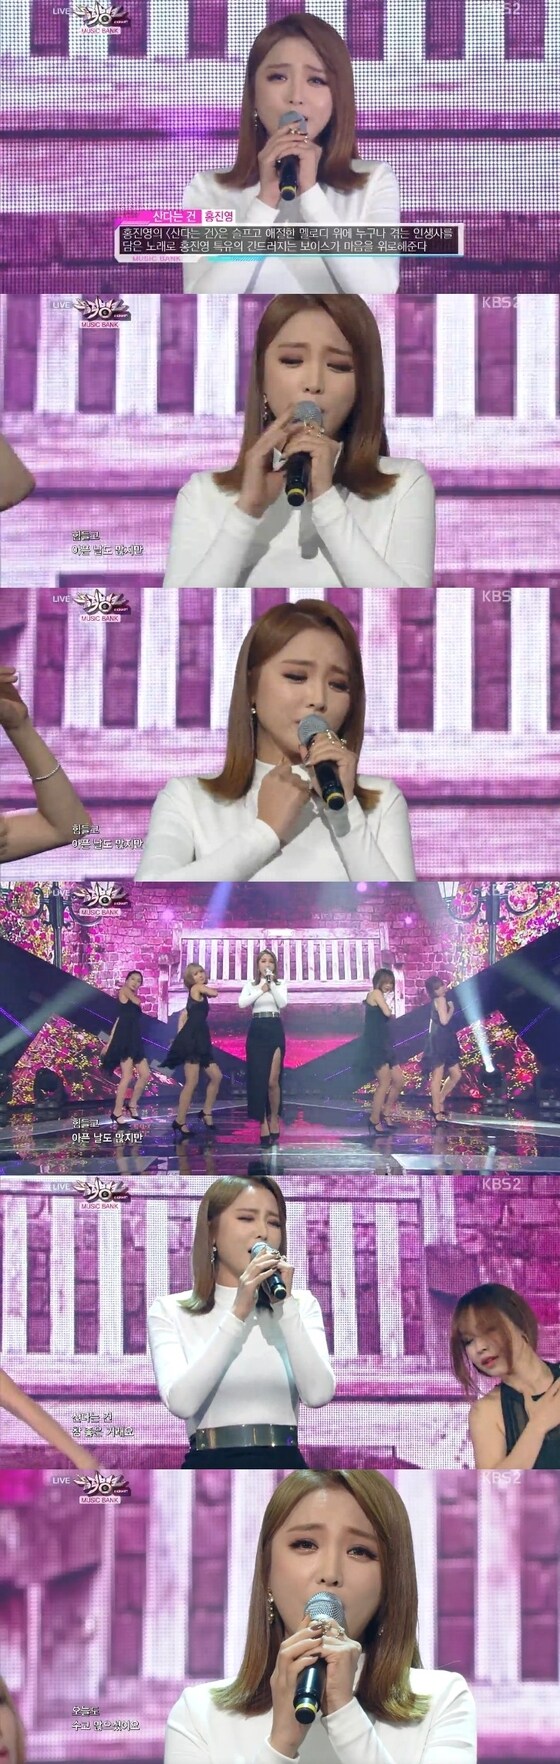 31일 오후 6시30분 방송된 KBS2 '뮤직뱅크'에서 홍진영의 '산다는 건' 무대가 공개됐다. © KBS2 ´뮤직뱅크´ 캡처